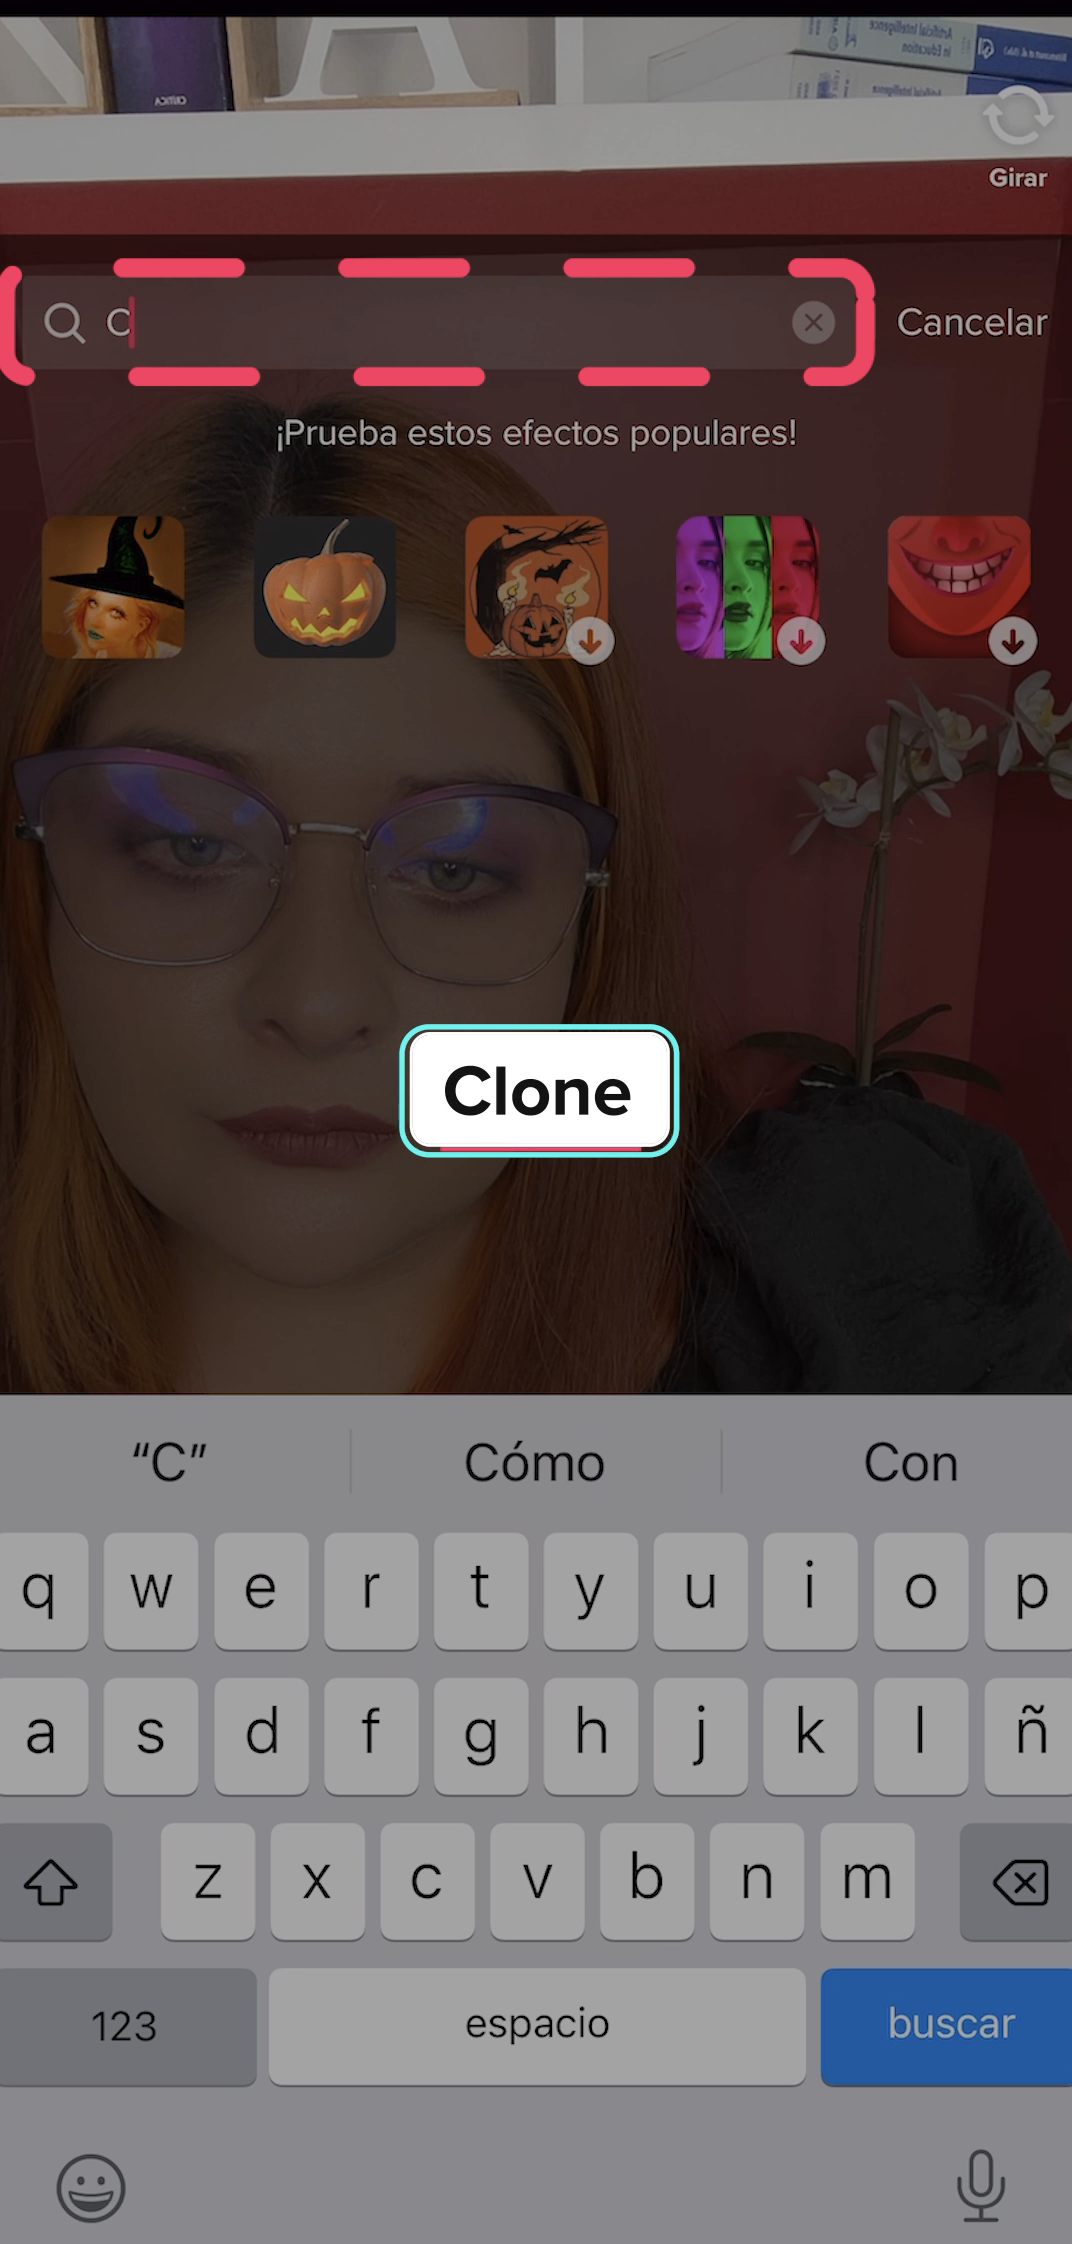 En el buscador añade la palabra Clone.